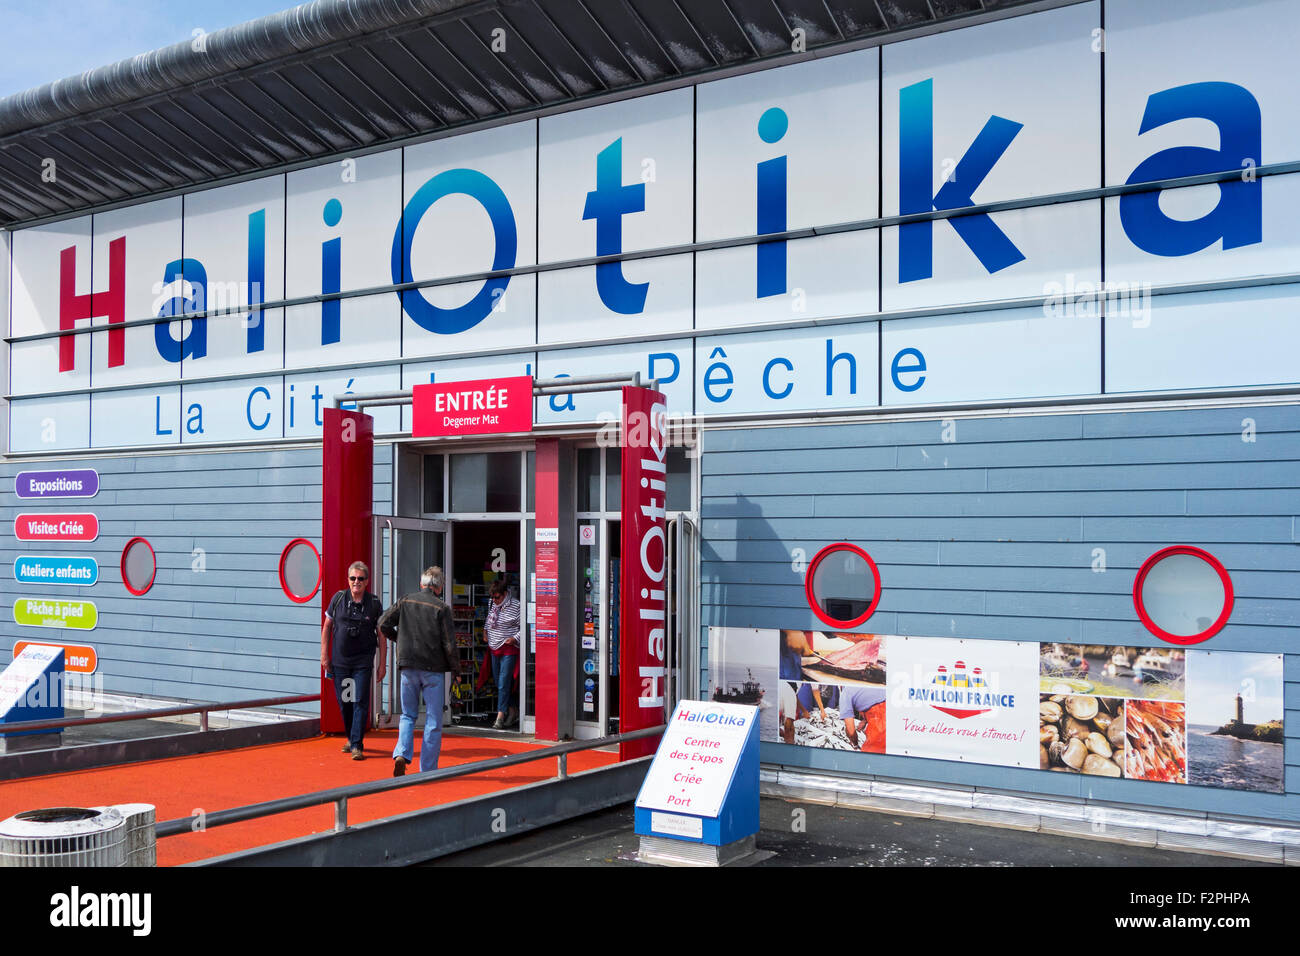 Haliotika - La Cité de la Pêche - museo interattivo e centro di ricerca sui prodotti della pesca a Le Guilvinec, Finistère, Brittany Foto Stock